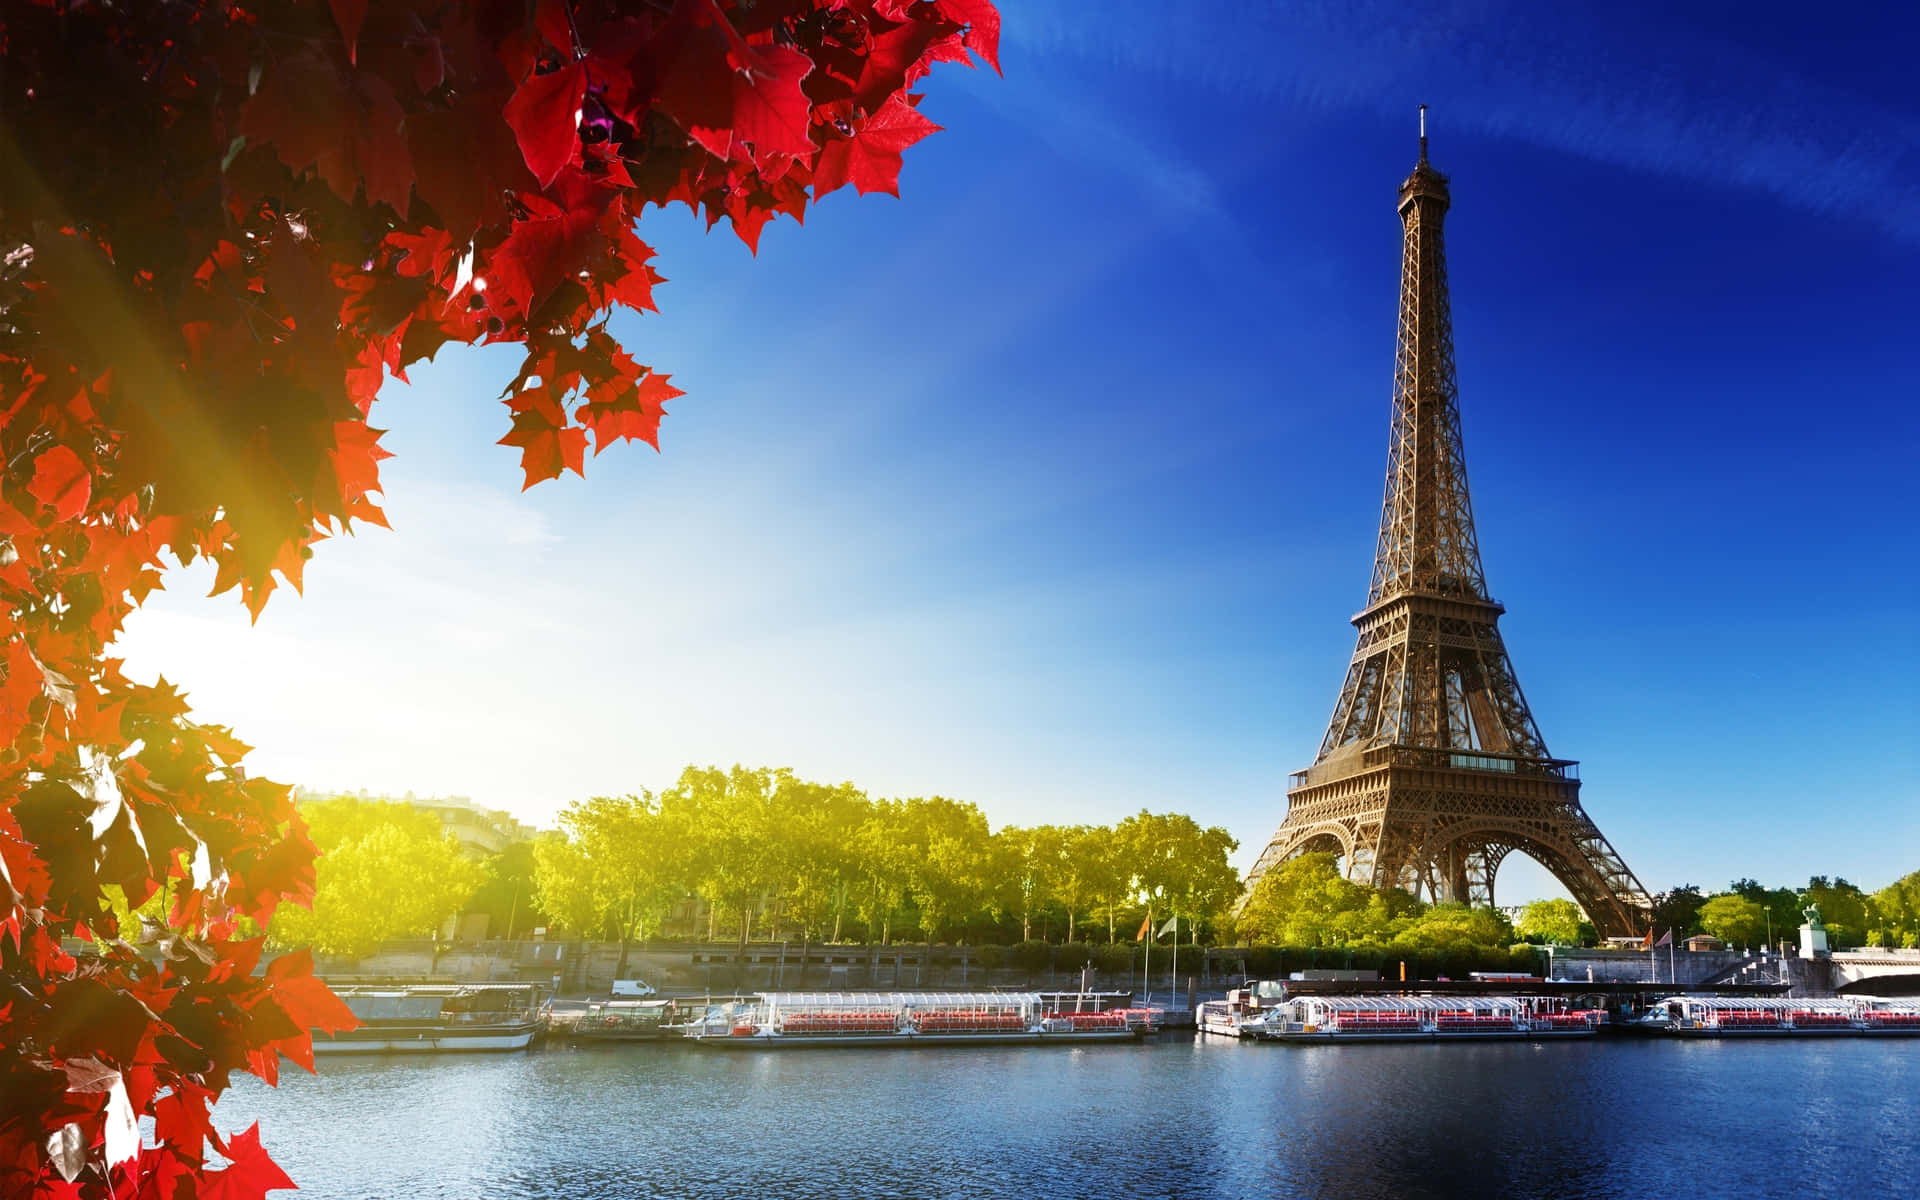 Laimpresionante Torre Eiffel Se Alza Imponente Sobre La Ciudad De Las Luces, París, En Toda Su Majestuosidad.